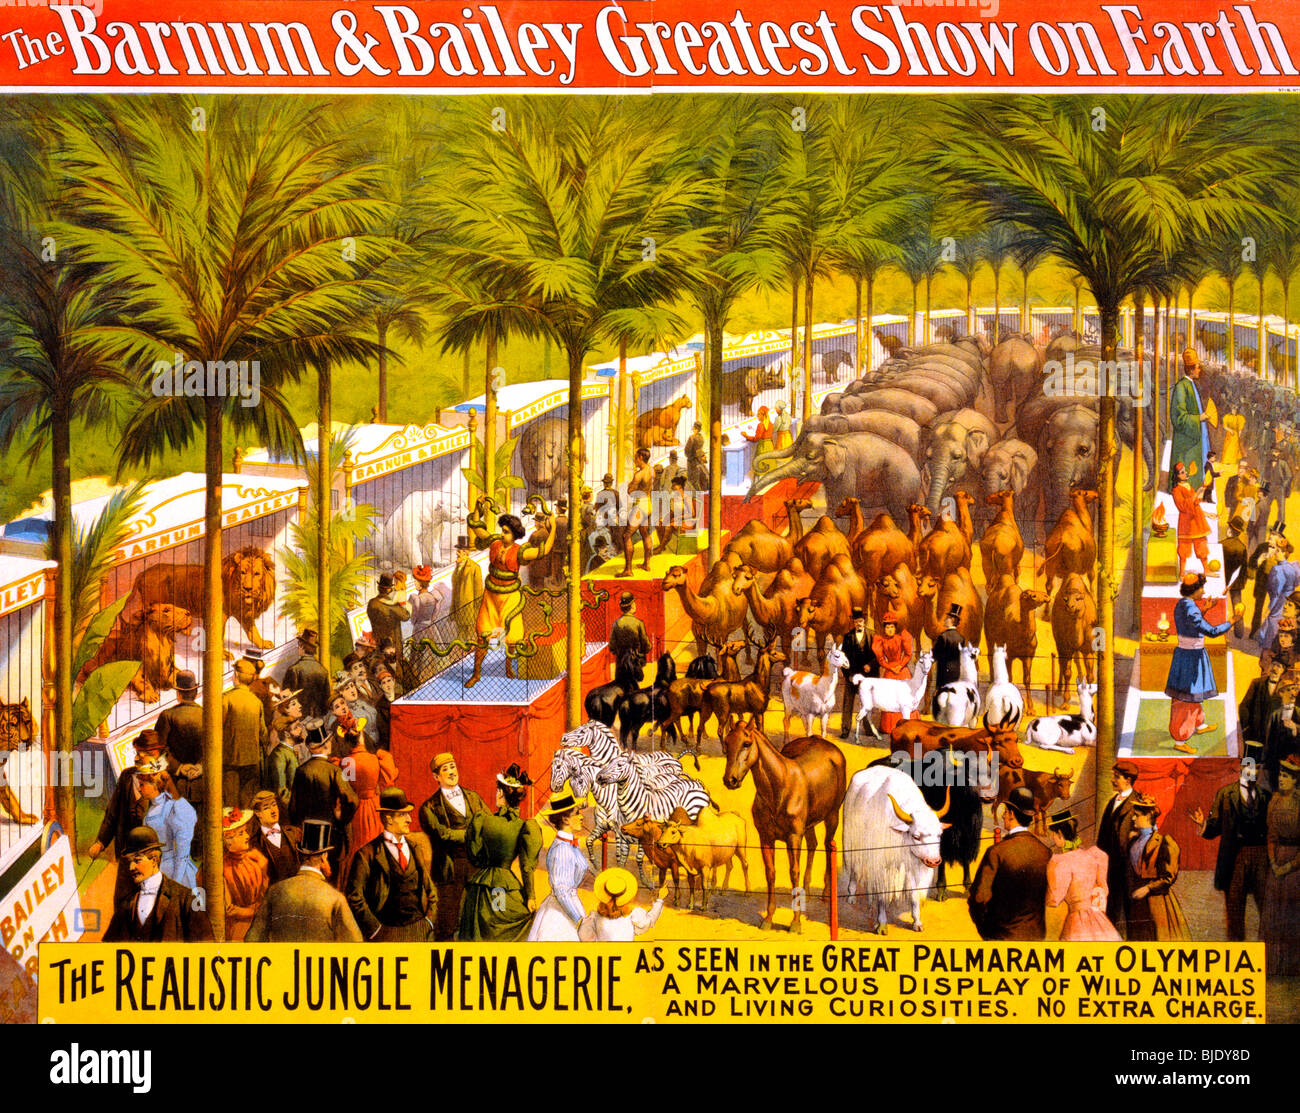 El Barnum & Bailey mayor espectáculo de la Tierra - La Selva realista menagerie póster, circa 1897 Foto de stock